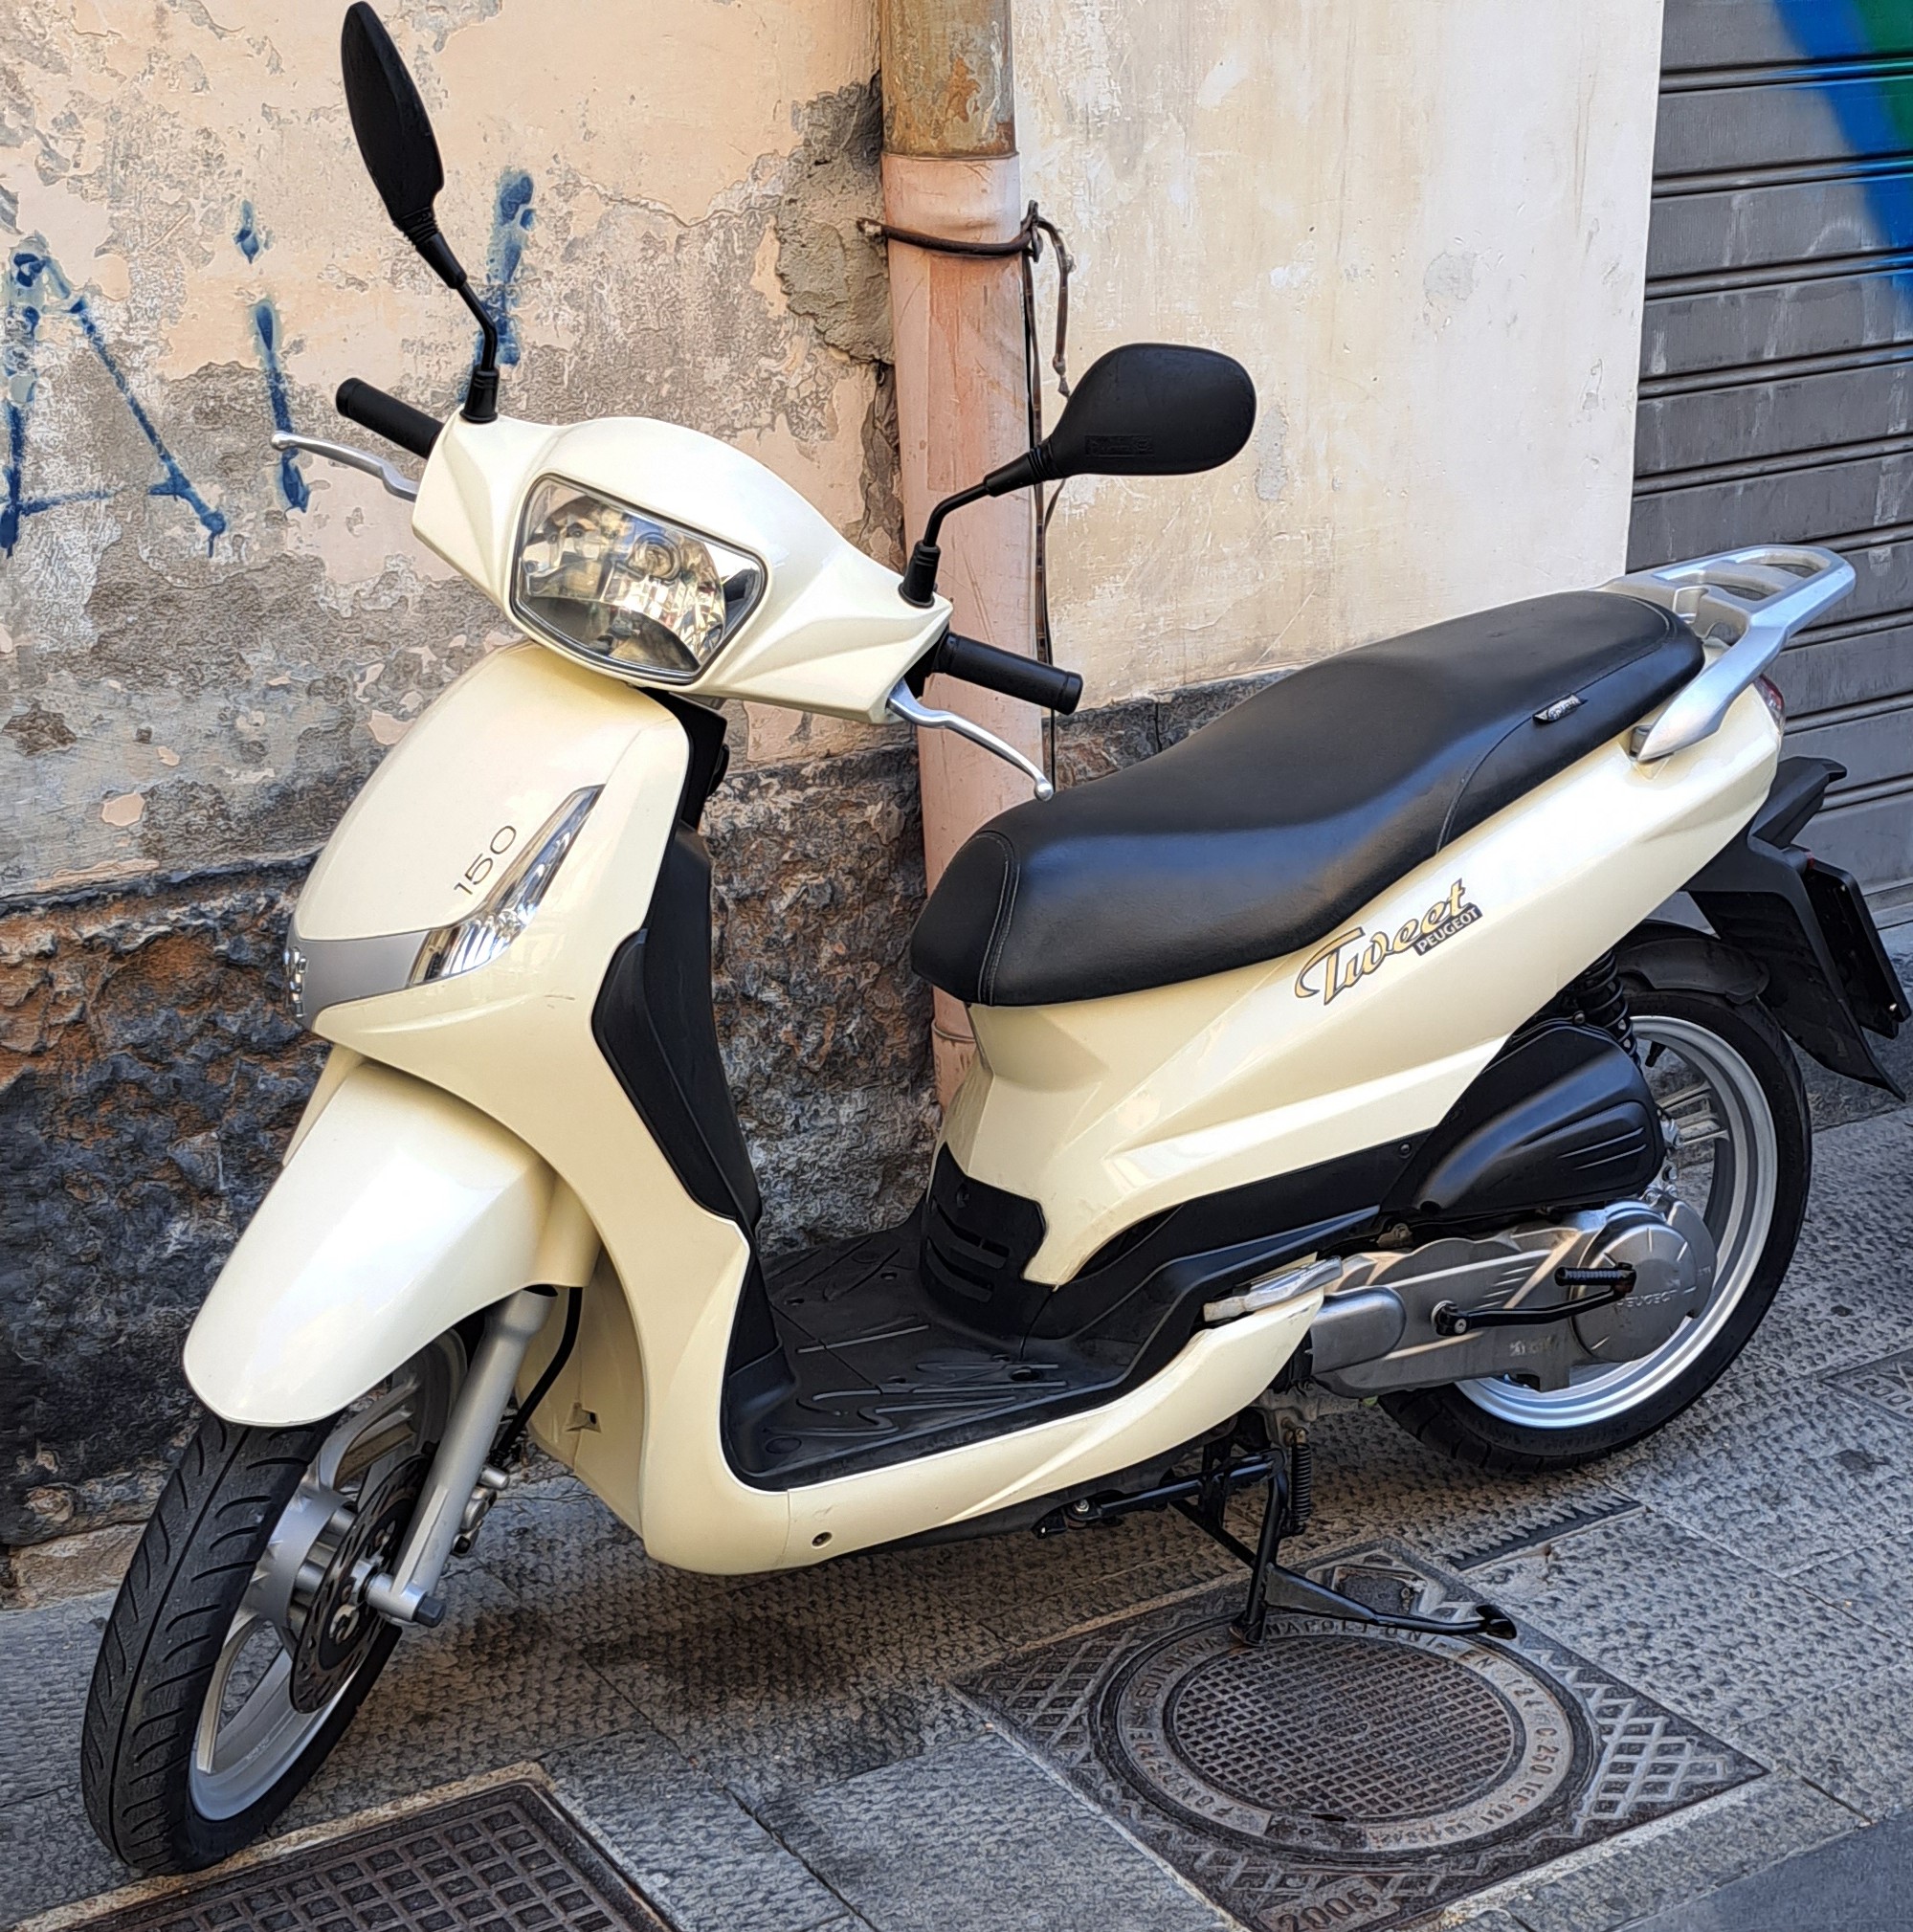 Noleggio Moto Twett 150 Napoli